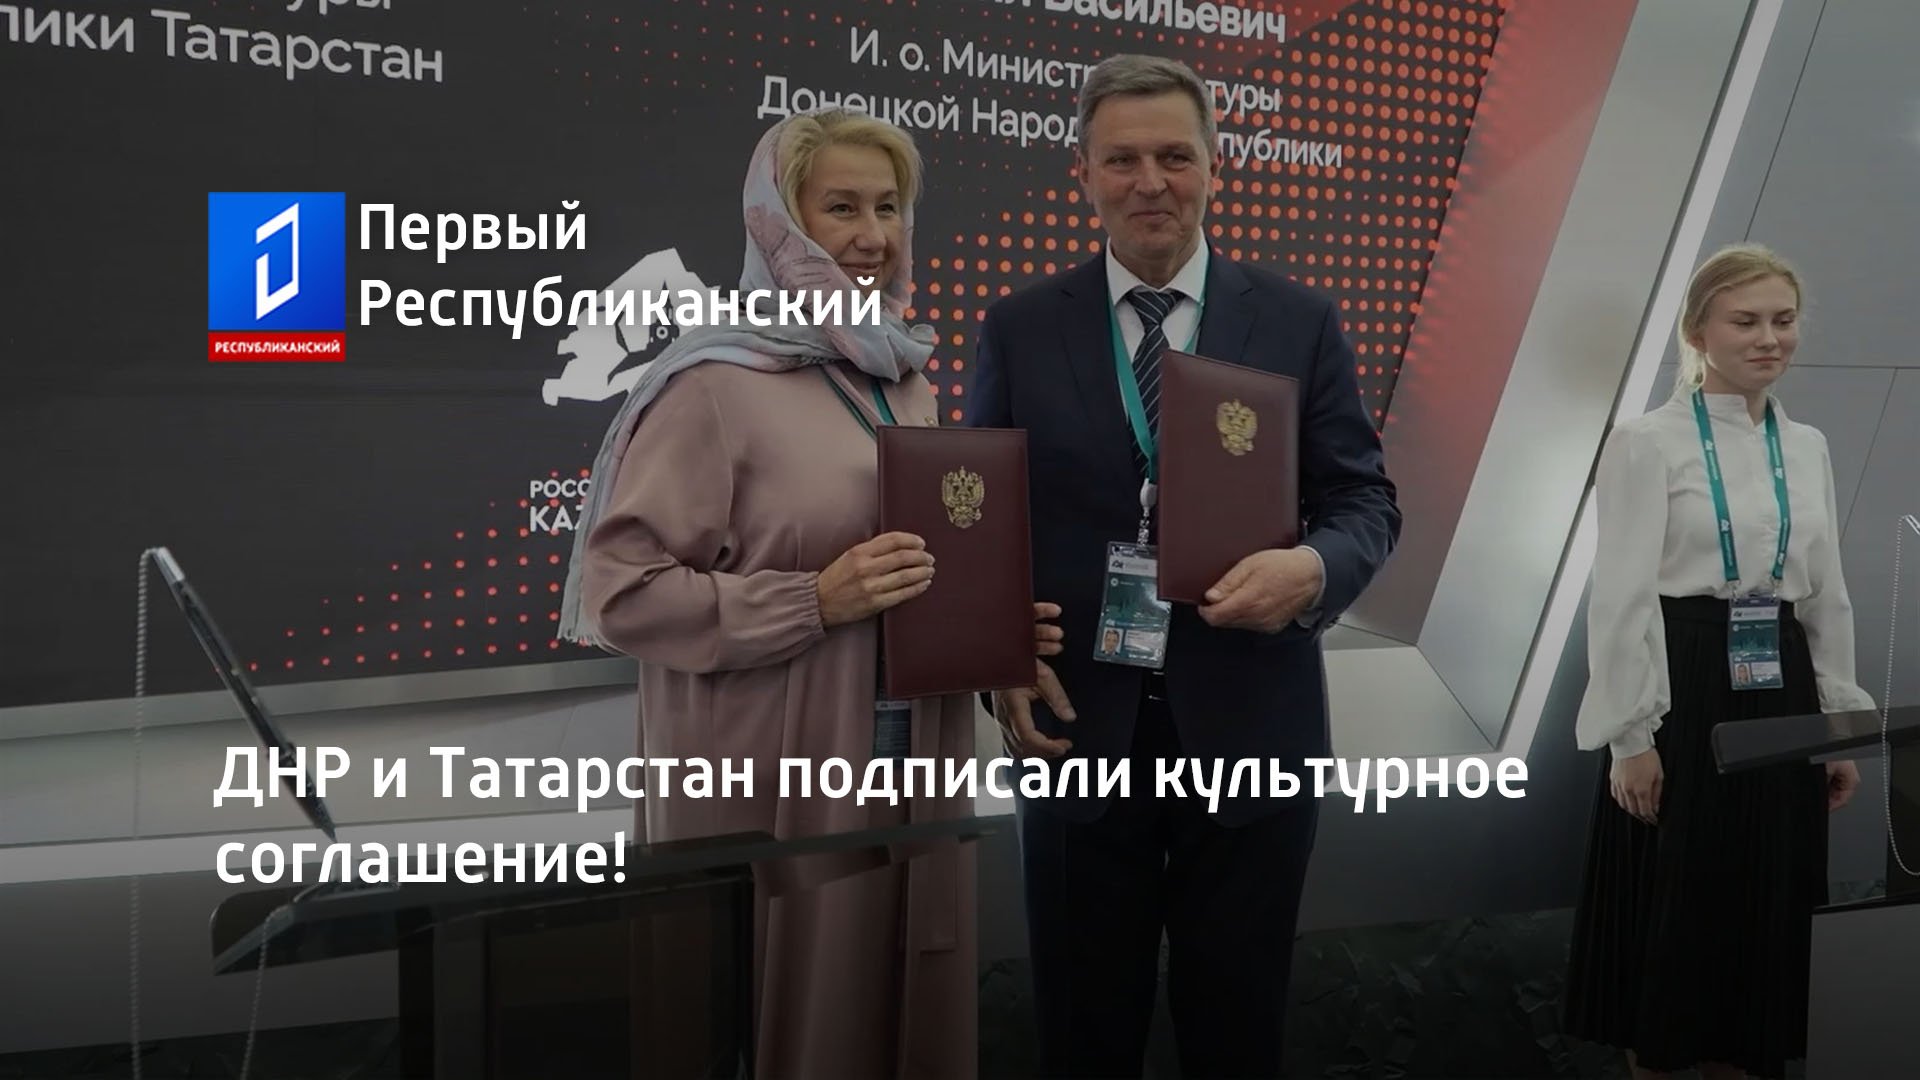 ДНР и Татарстан подписали культурное соглашение!